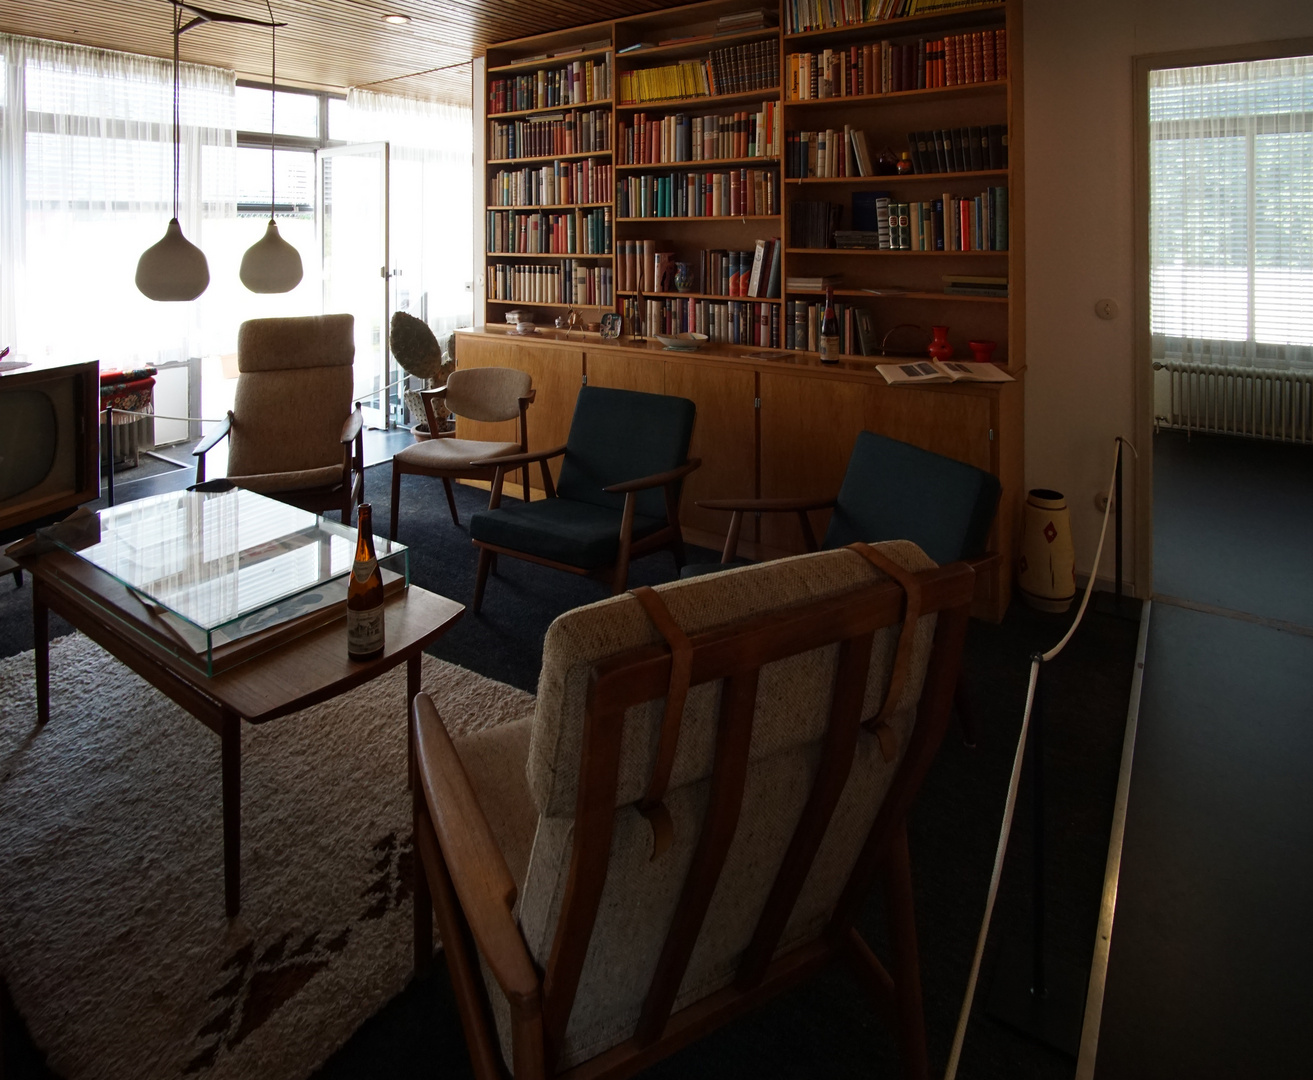 Wie dazumal - Wirtschaftswunder (15) Wohnzimmer in den 70er Jahren mit der typischen Bücherwand